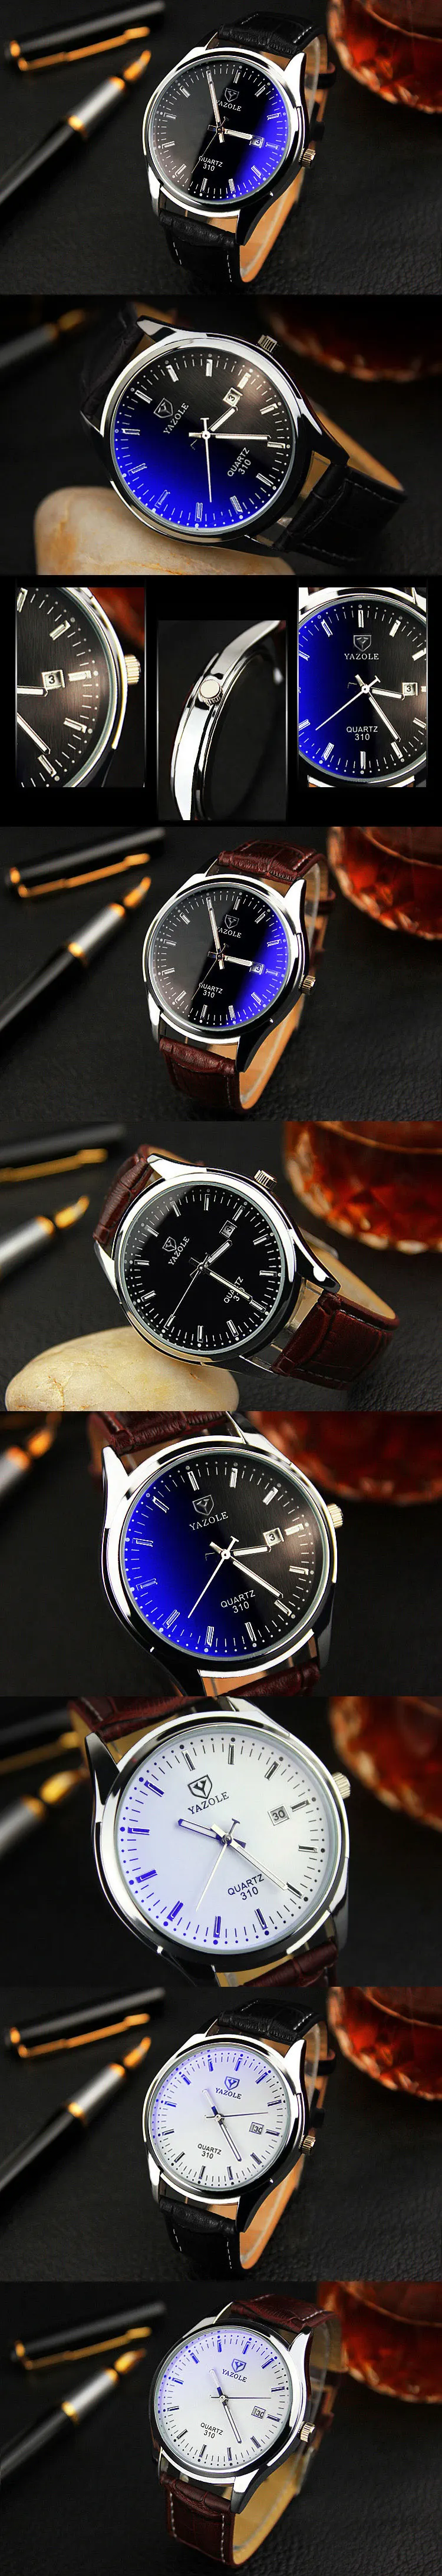 YAZOLE Бизнес наручные часы для мужчин лучший бренд класса люкс известный наручные часы кварцевые часы для мужчин часы Relogio Masculino с календарем